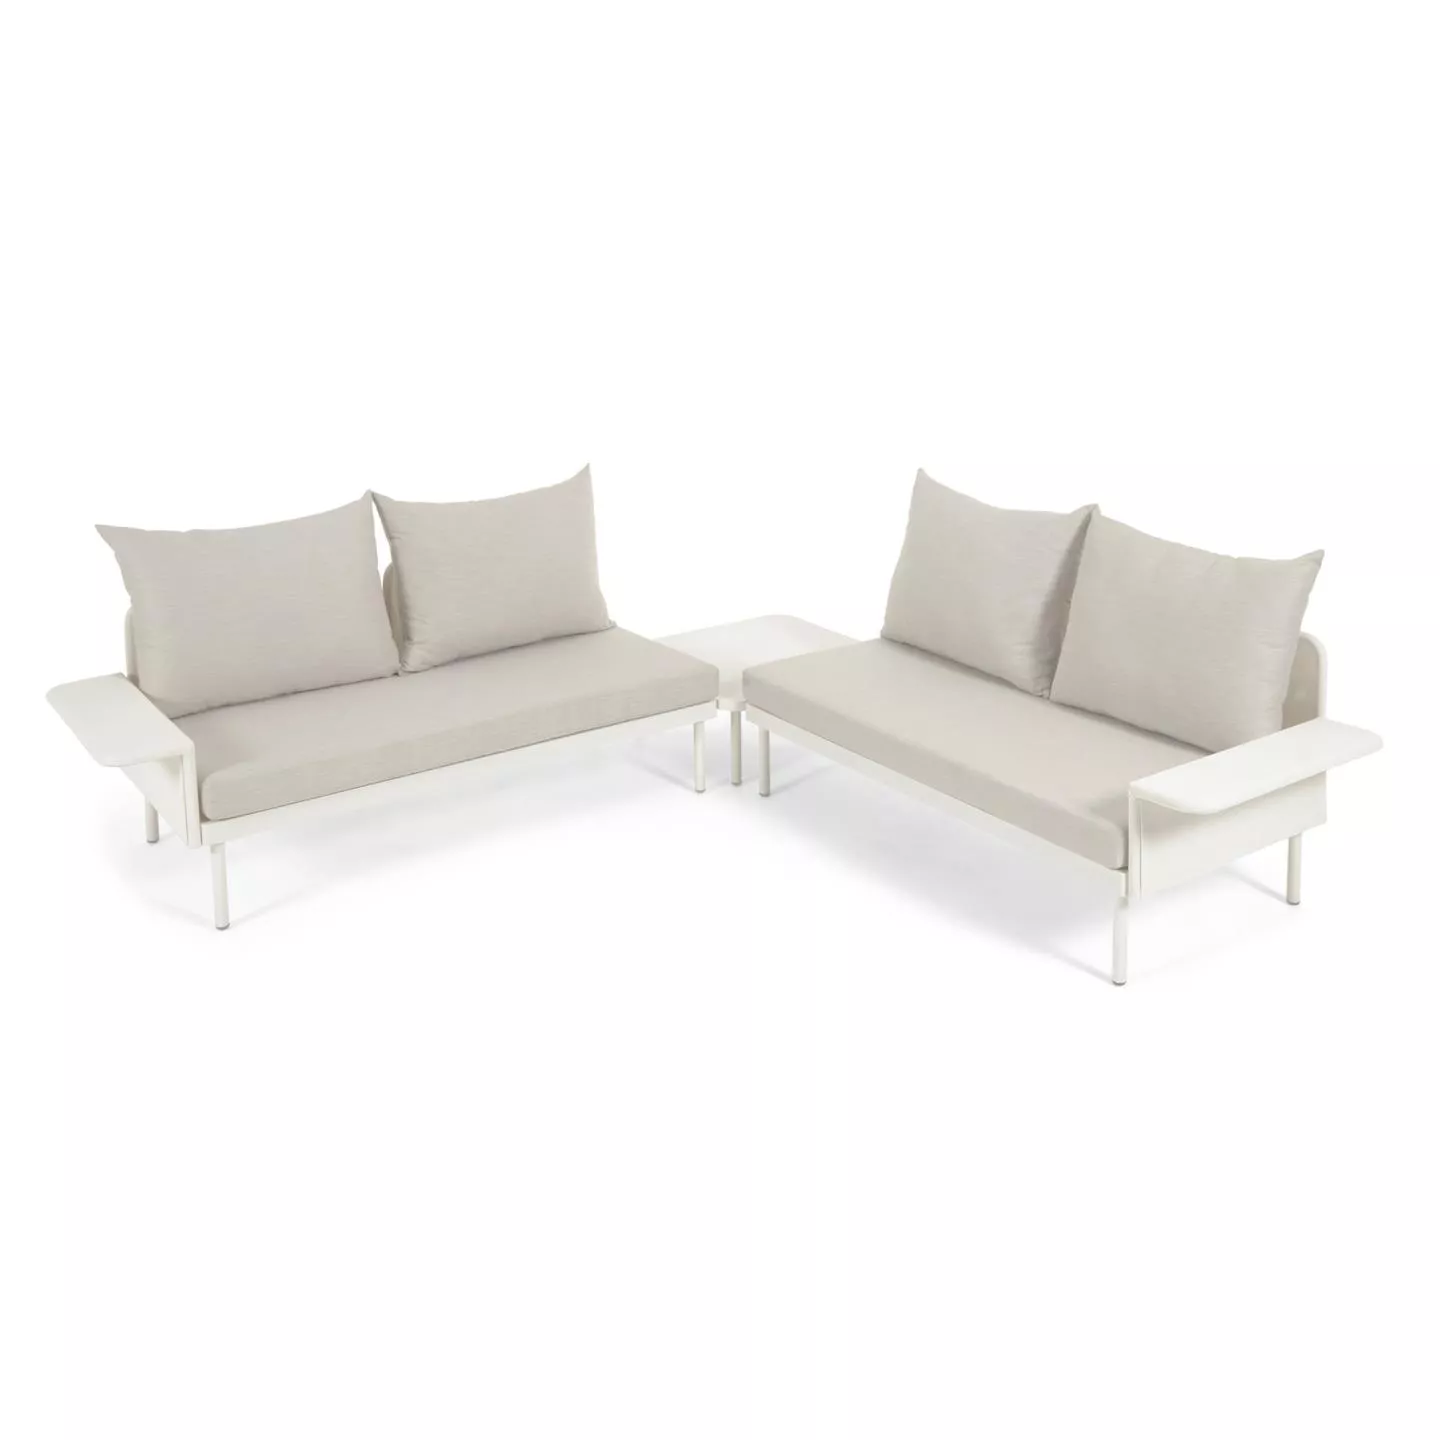 Угловой алюминиевый диван La Forma Zaltana с белой матовой отделкой 164 см